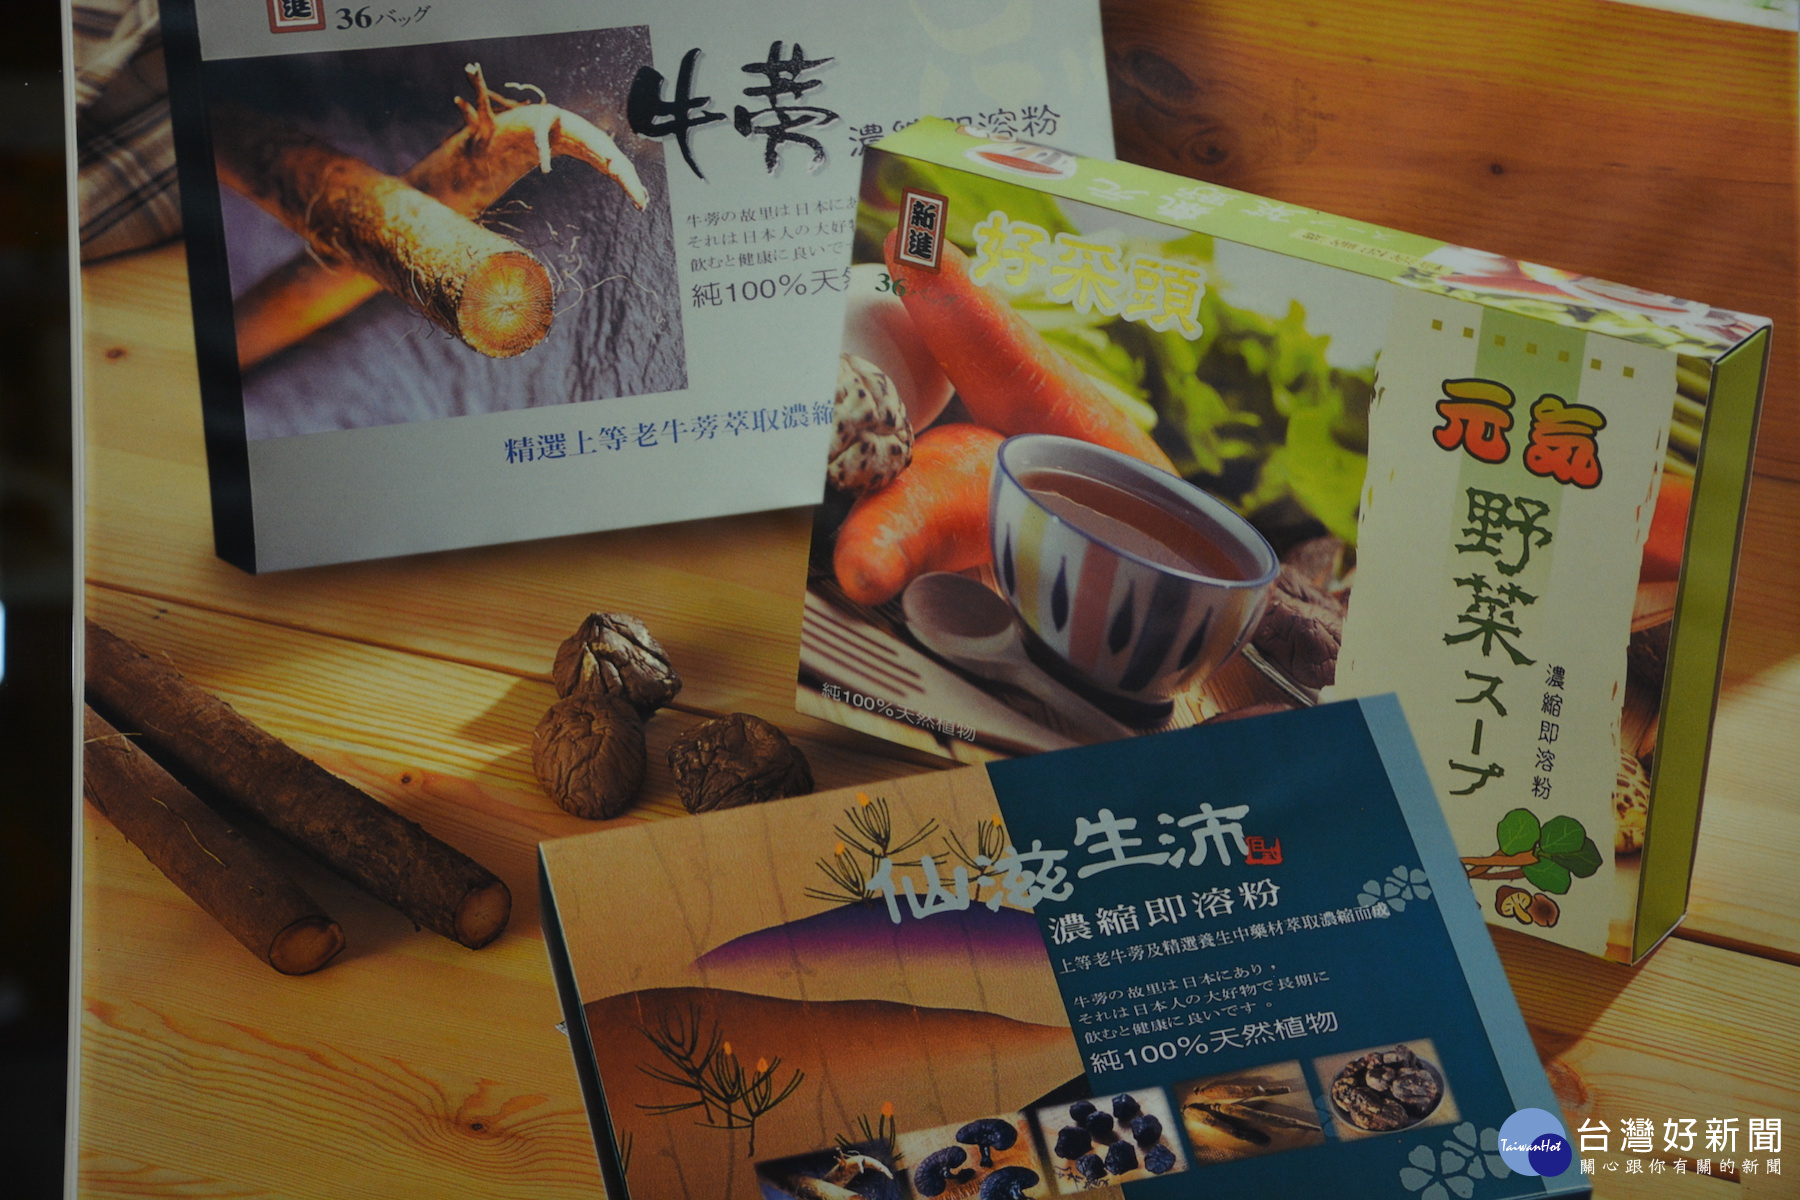 青玉生技「一級蒡」牛蒡茶包等系列產品在東南亞等國家受到青睞。(圖/記者黃芳祿攝)